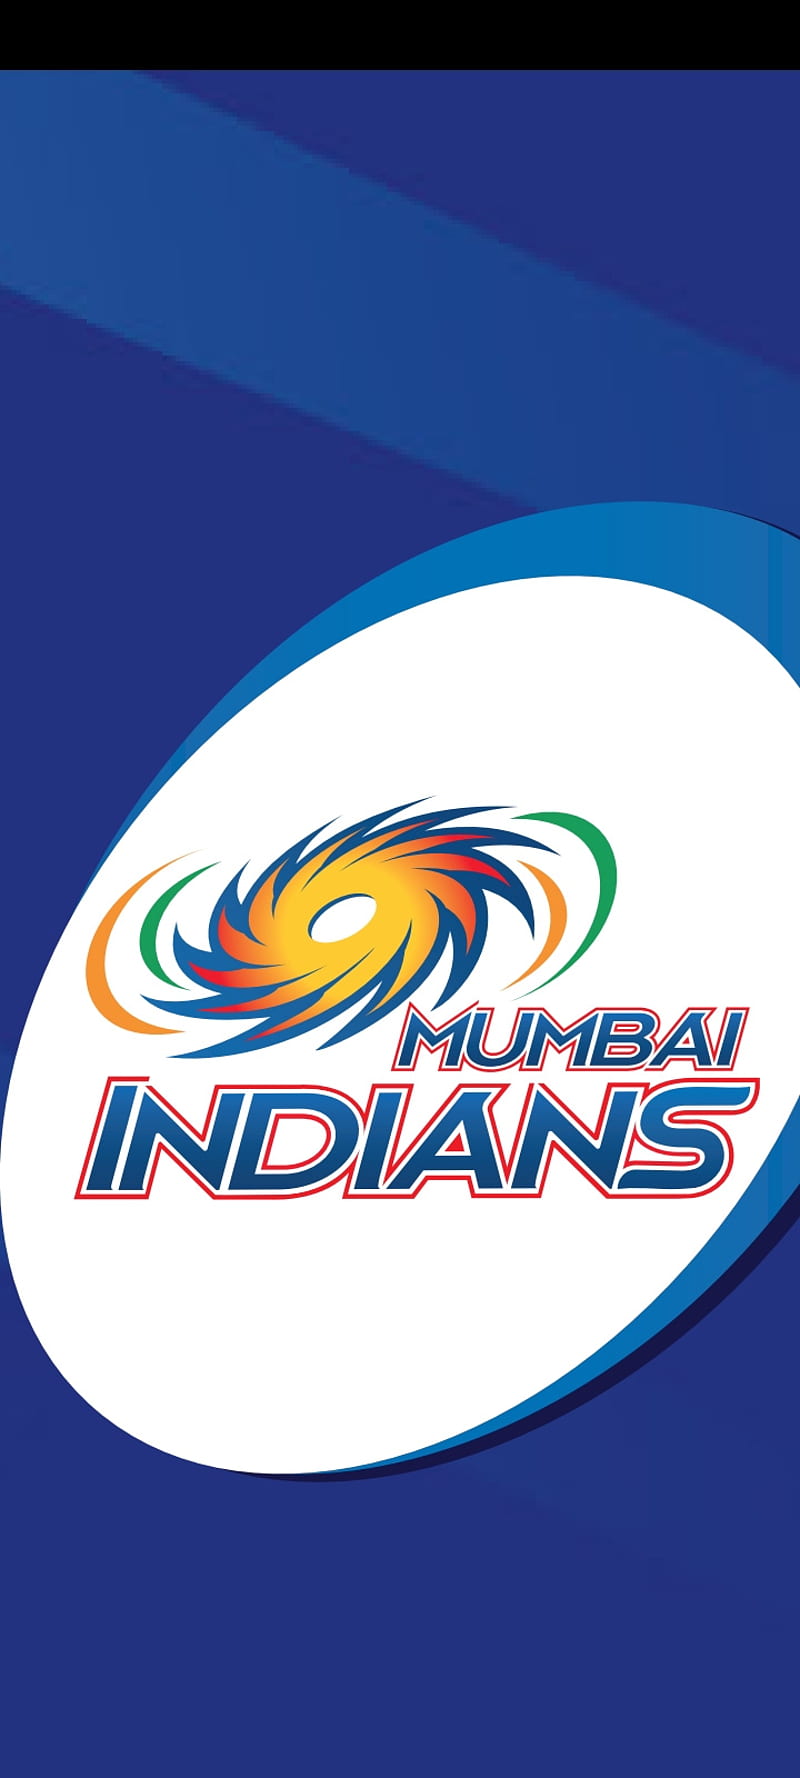 Mumbai Indians strike Slice shirt sponsorship - SportsPro-donghotantheky.vn